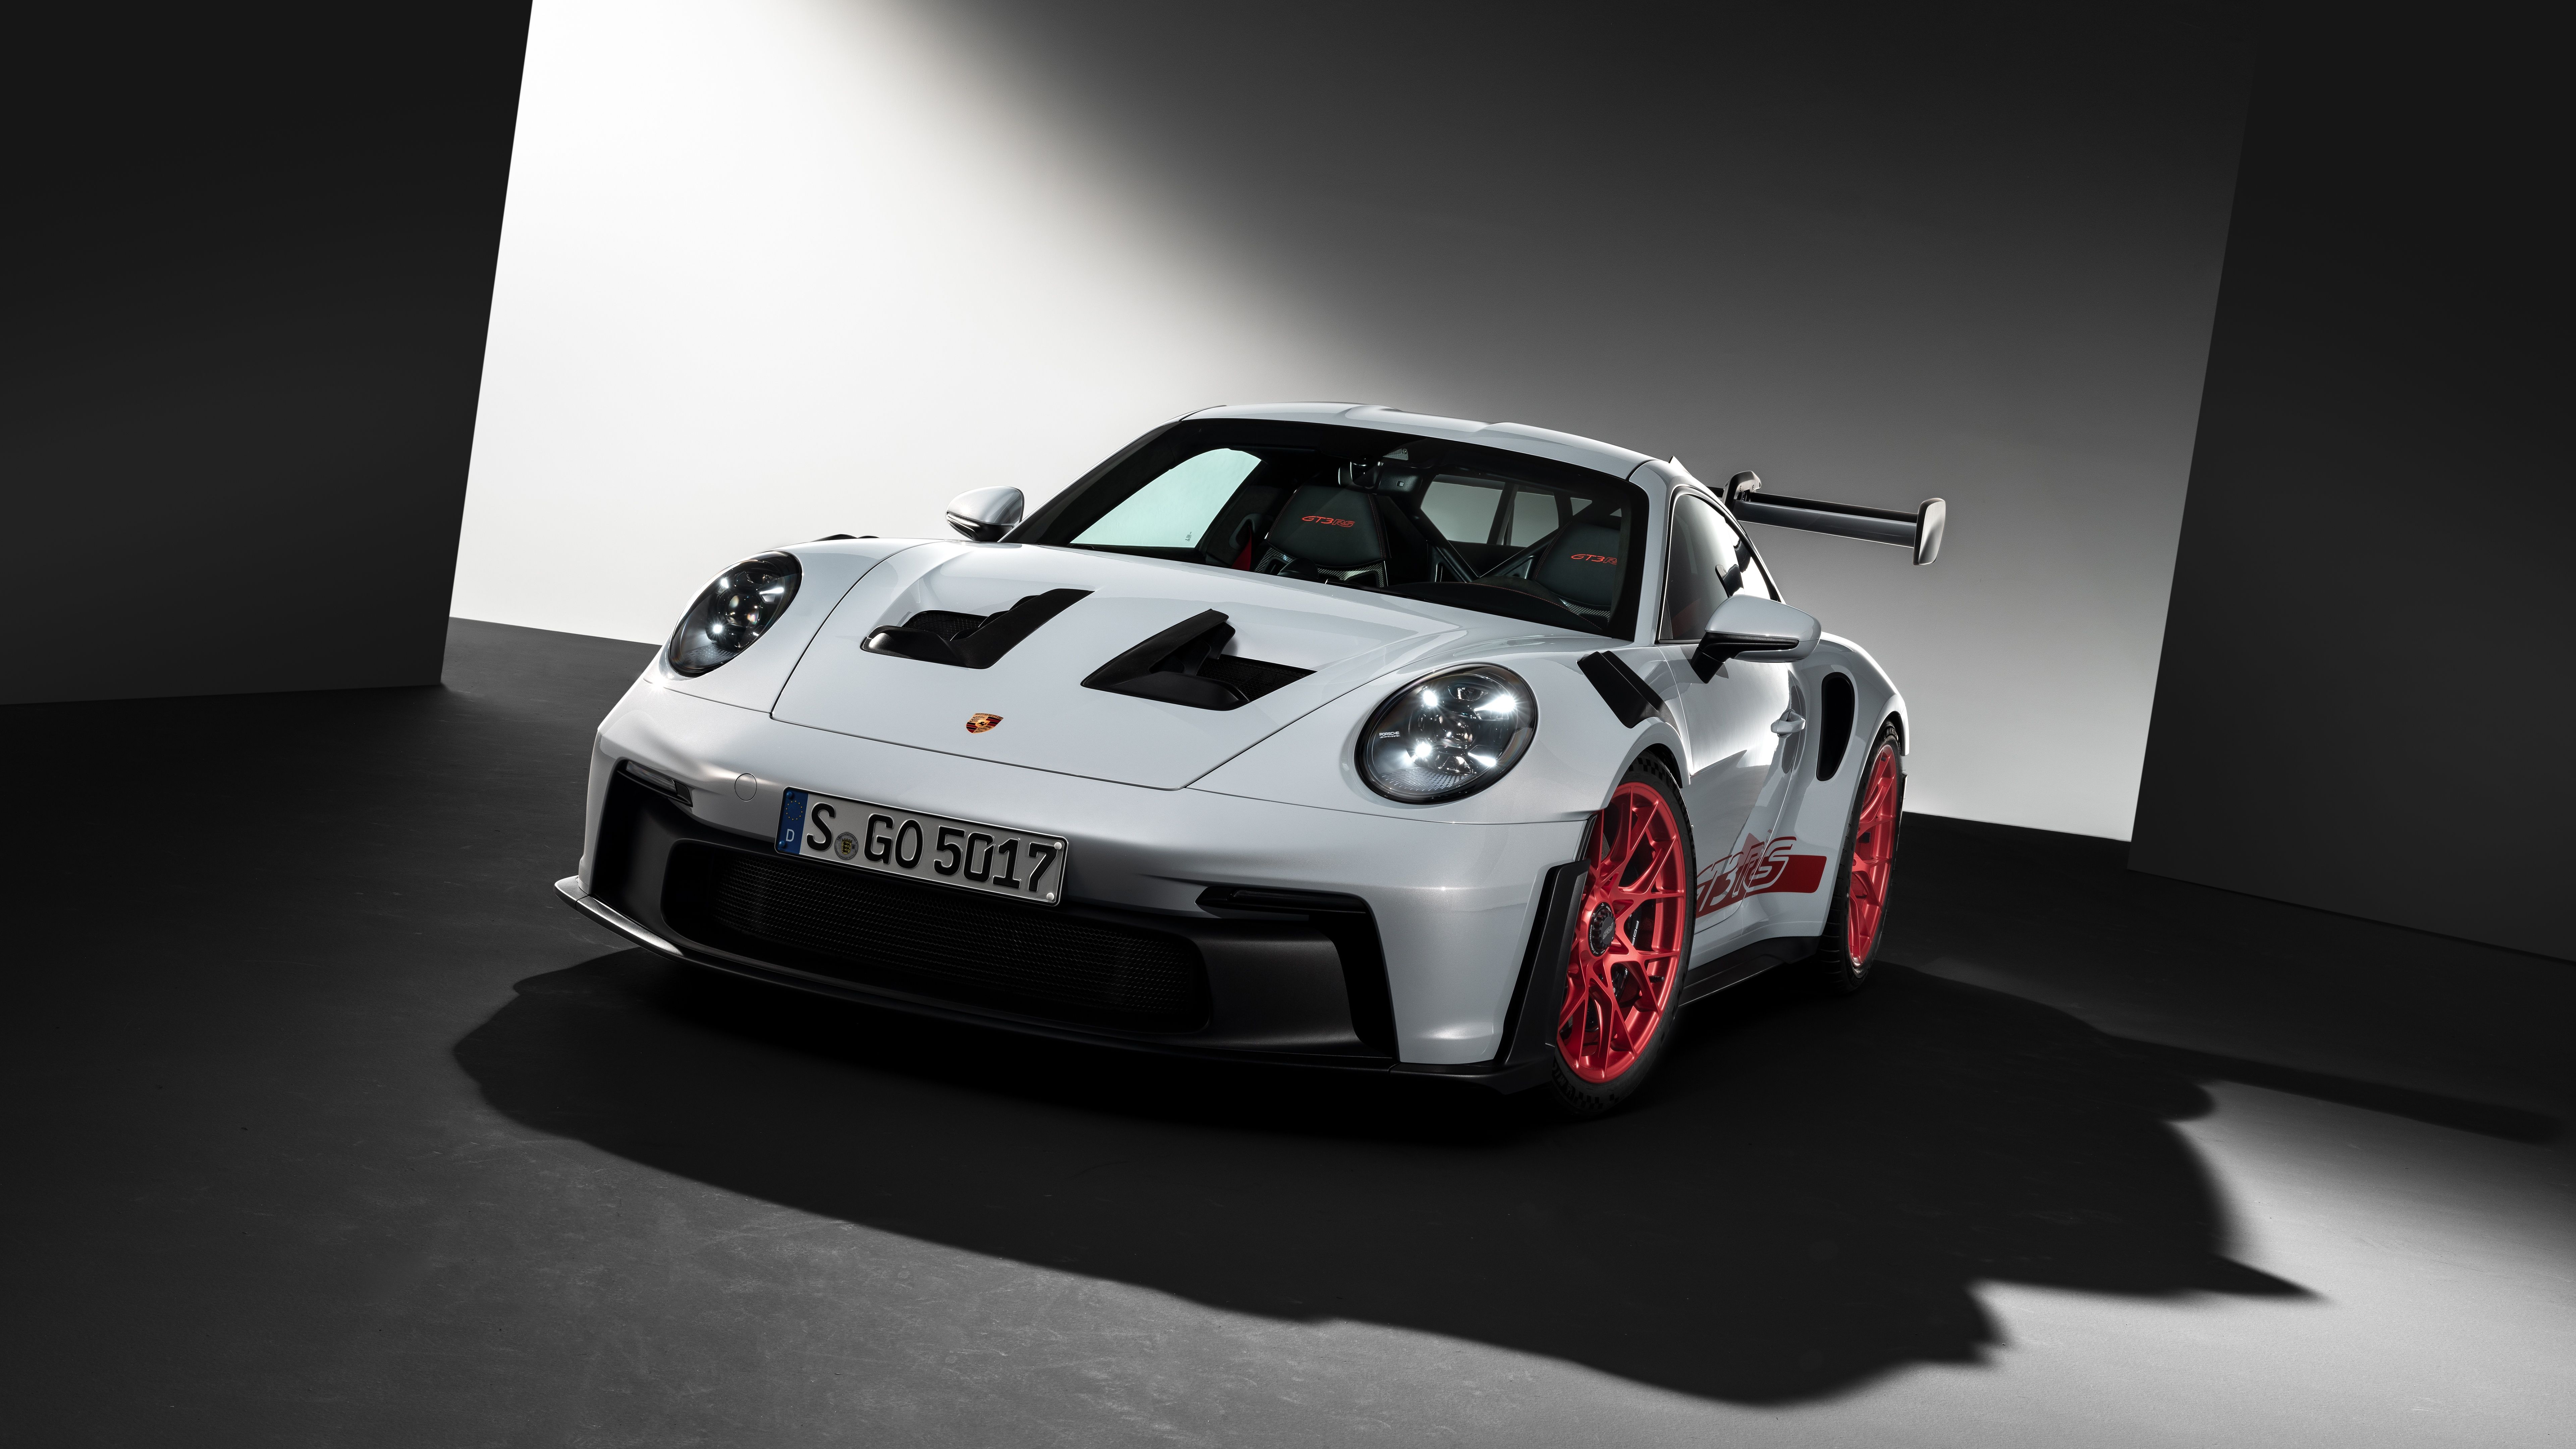  Porsche Gt3 Rs Hintergrundbild 7680x4320. Porsche 911 GT3 RS Wallpaper 4K, 5K, 8K, Cars